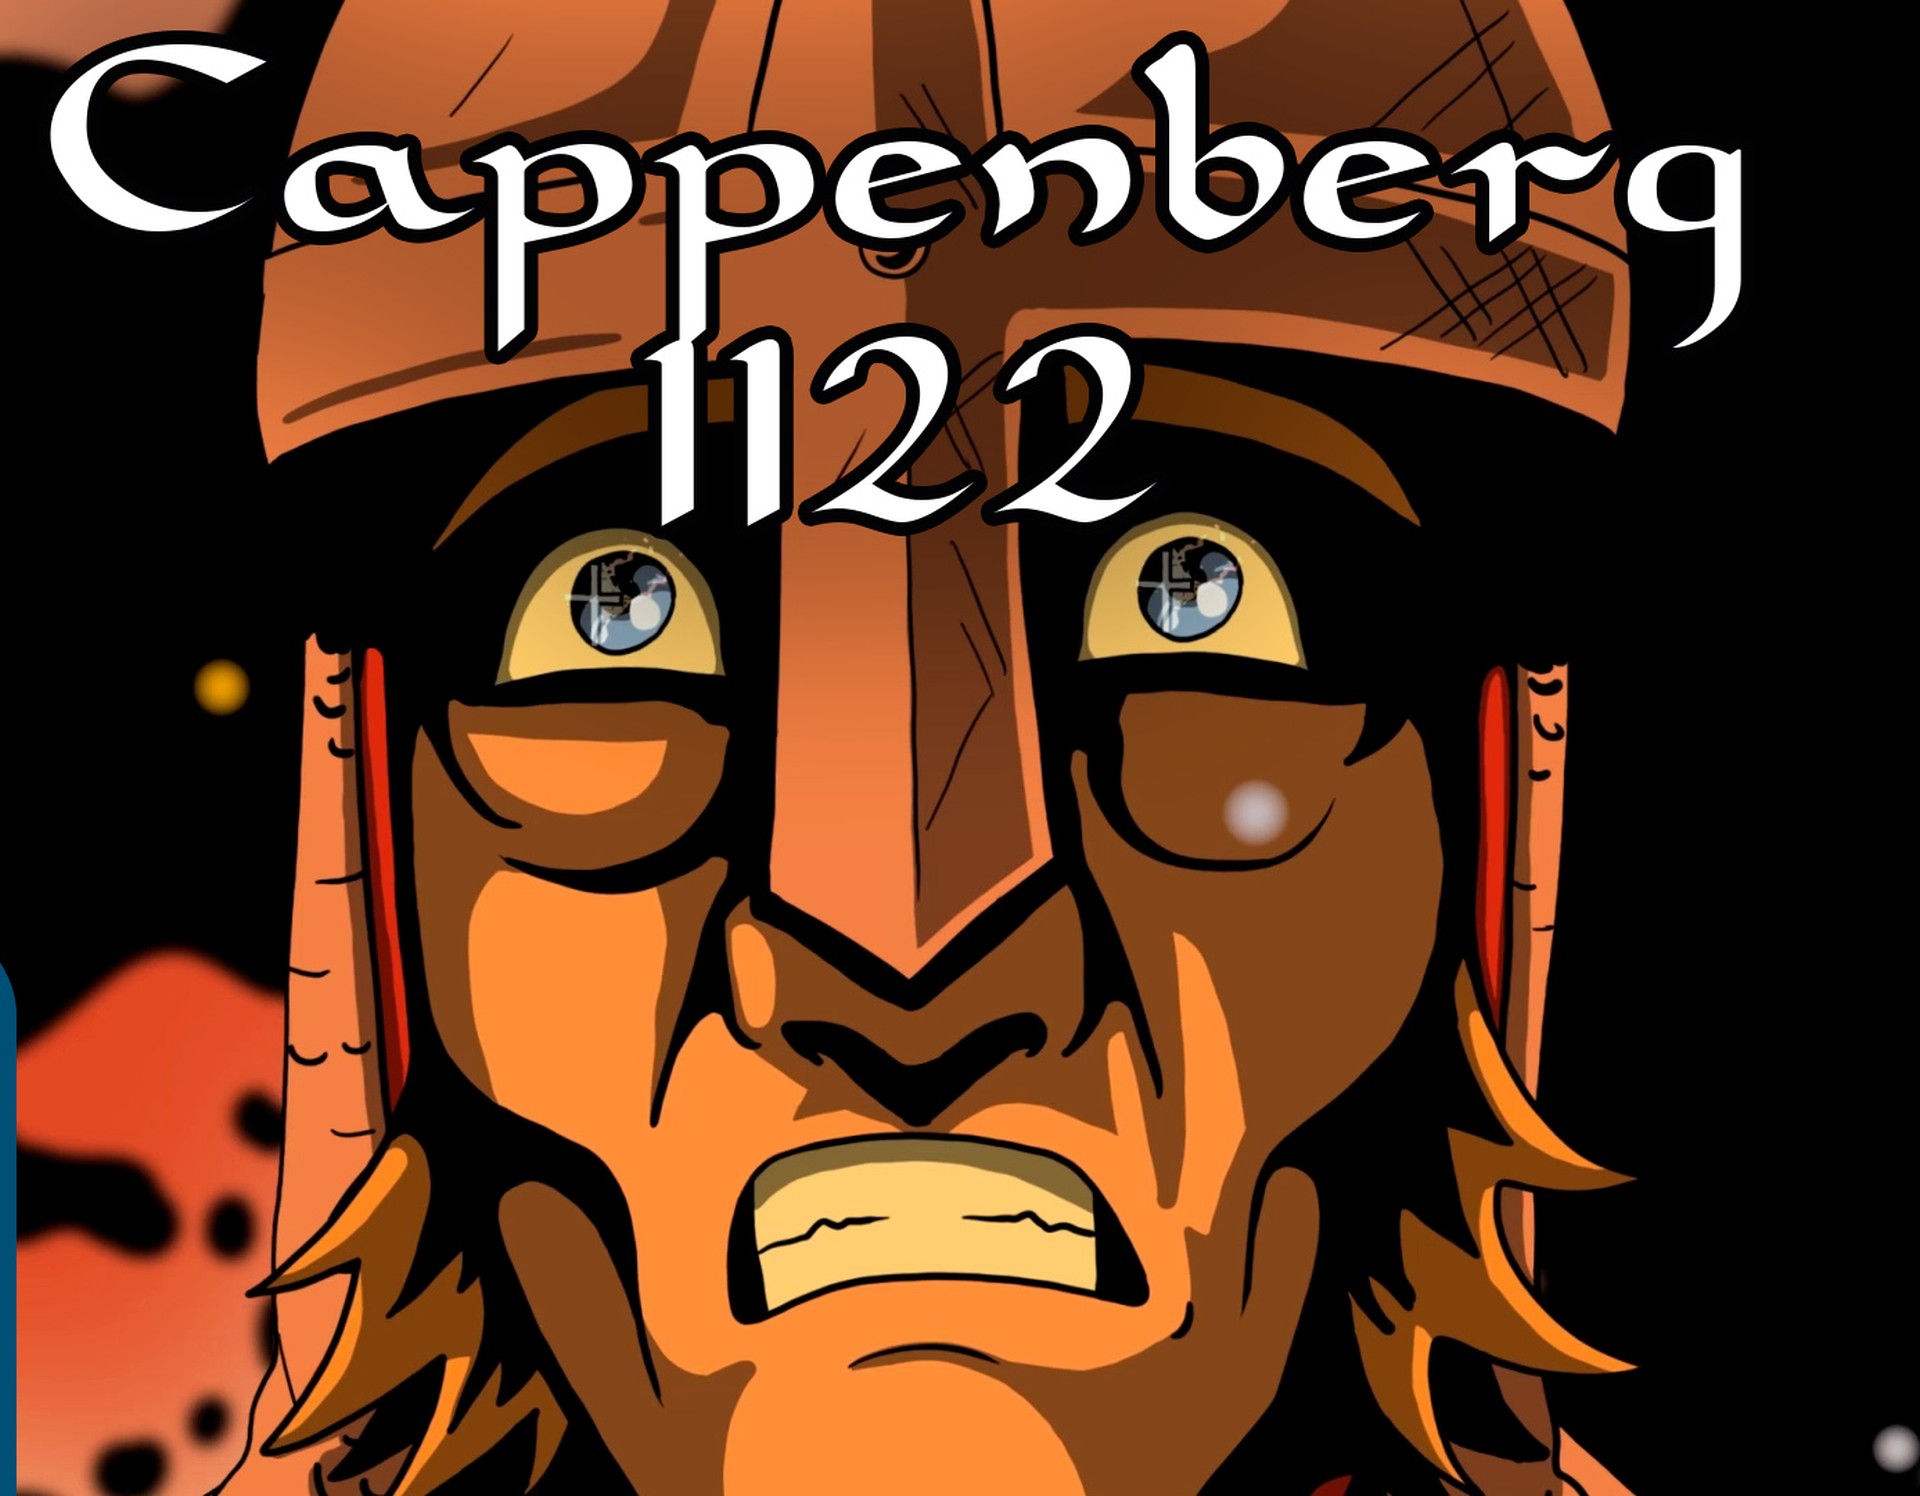 Cappenberg 1122 heißt die neue LWL-Webserie, die im Internet zu sehen ist.